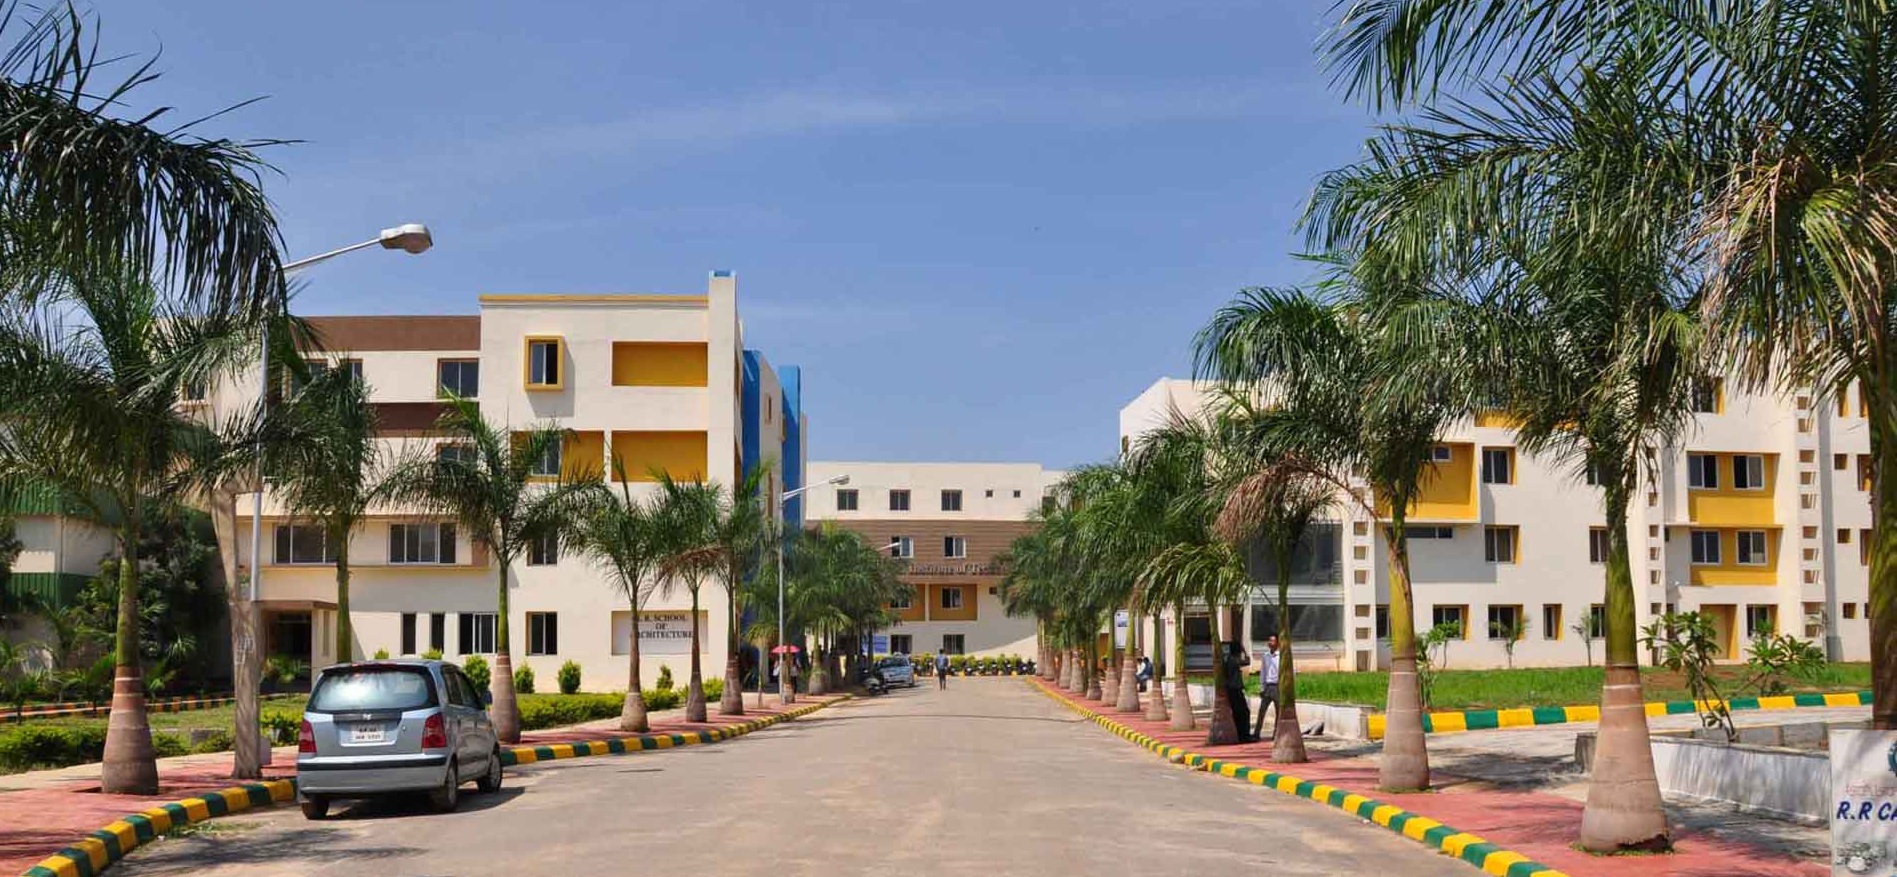 R.R. Institute Of Allied Health Sciences, Bengaluru Image